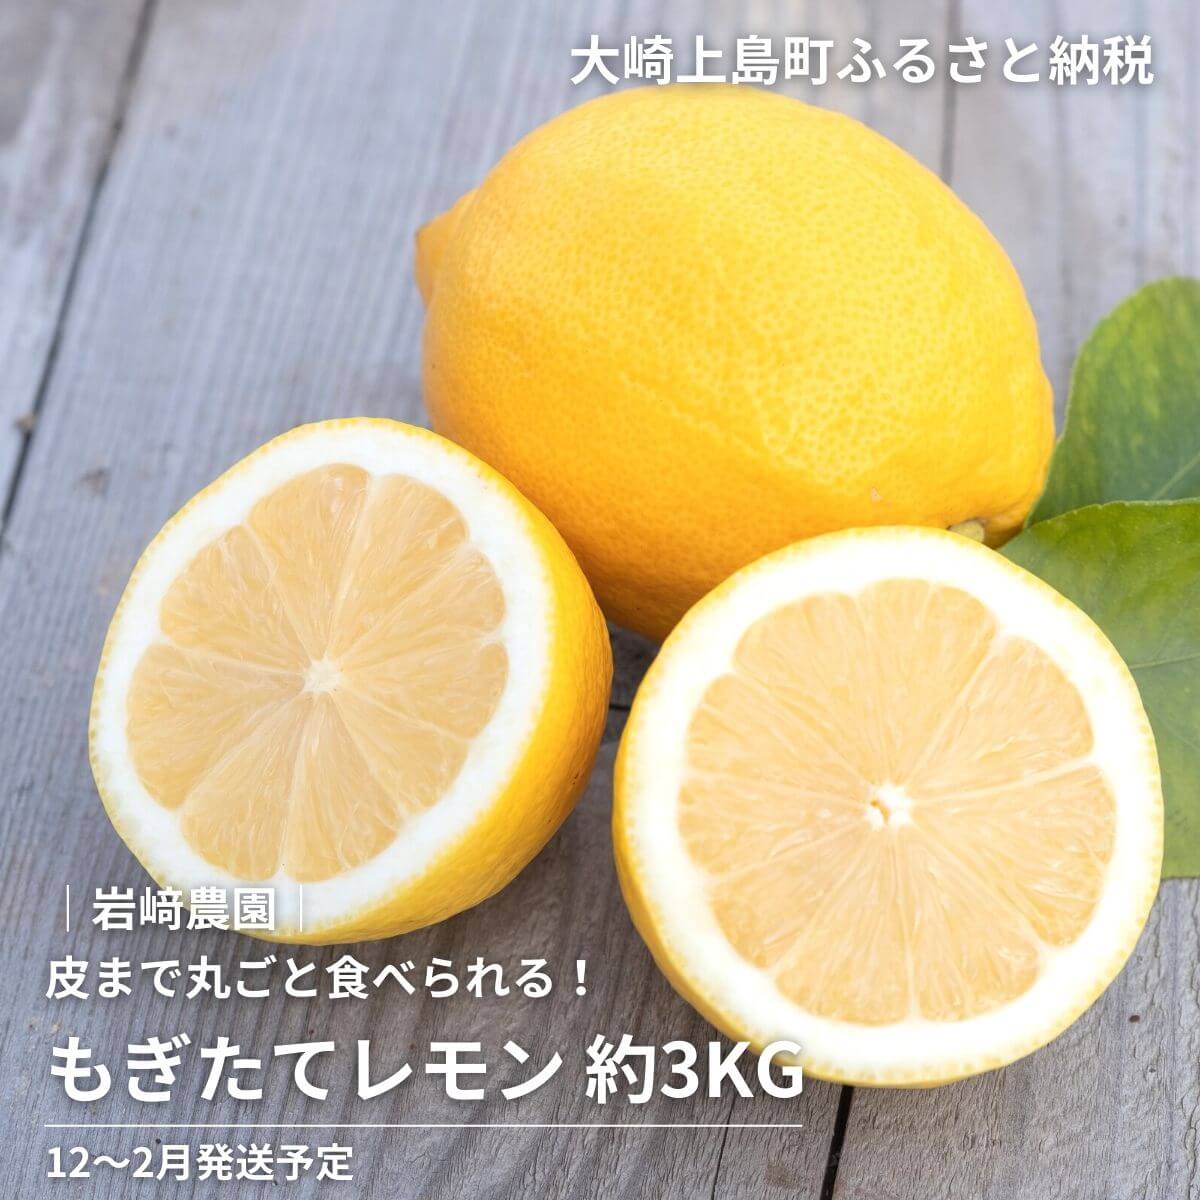 岩崎農園 もぎたてレモン 約3kg ワックス防腐